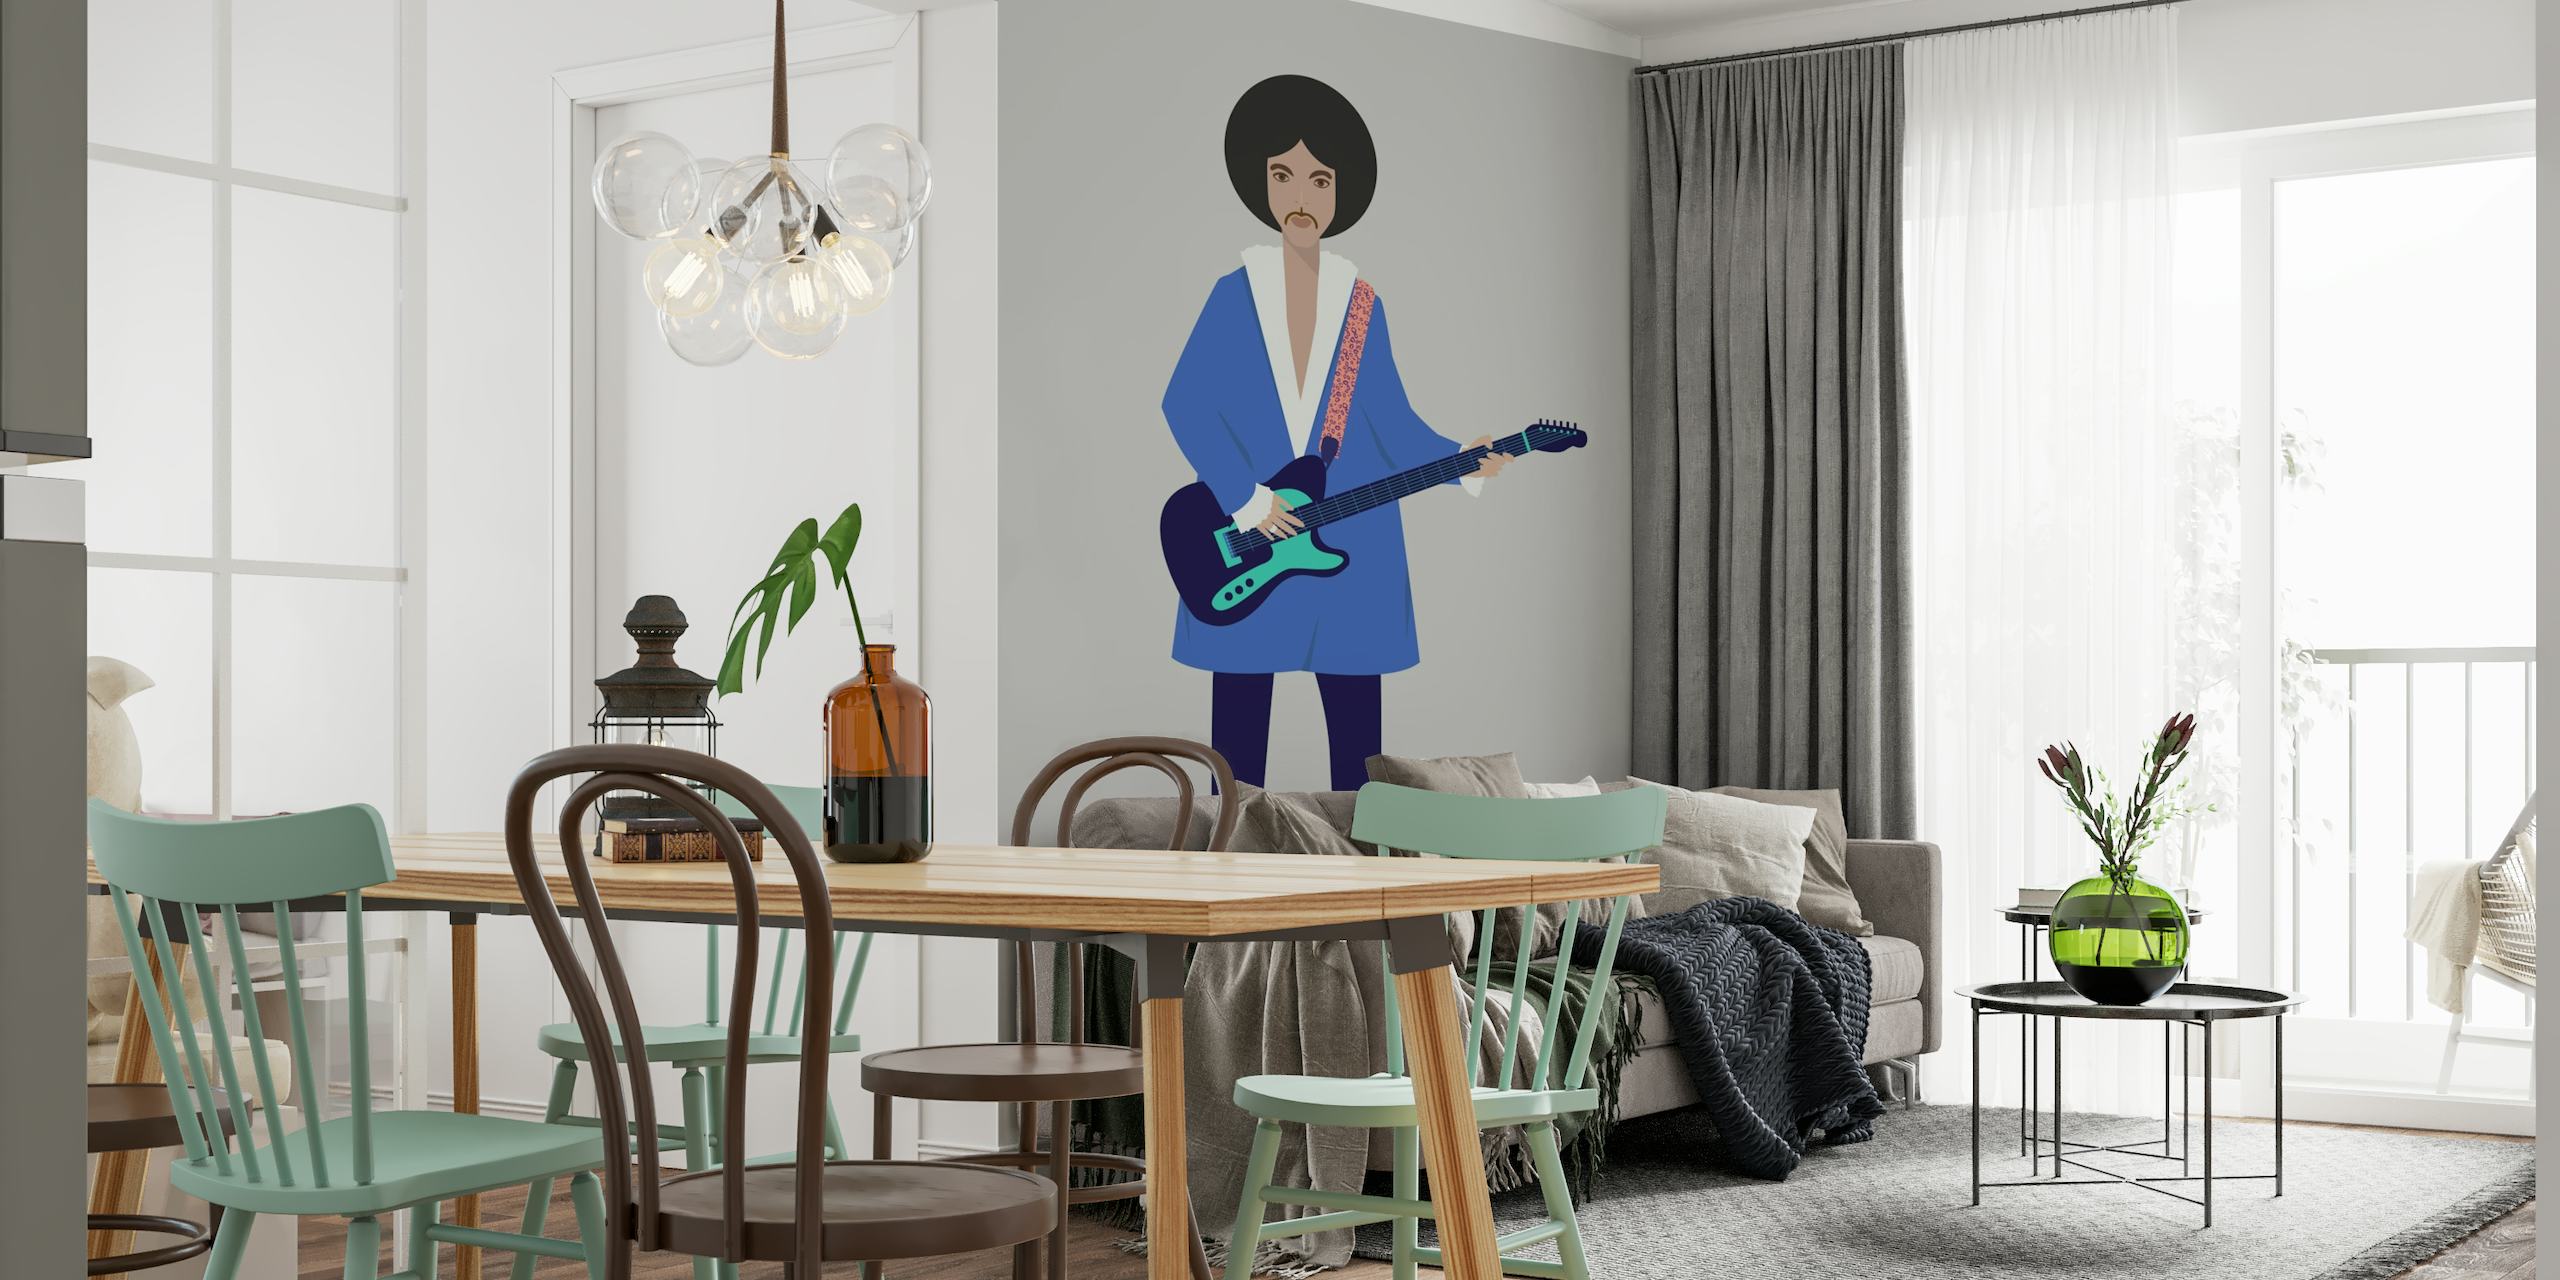 Illustratief fotobehang van een persoon met een gitaar, met een modern artistiek ontwerp